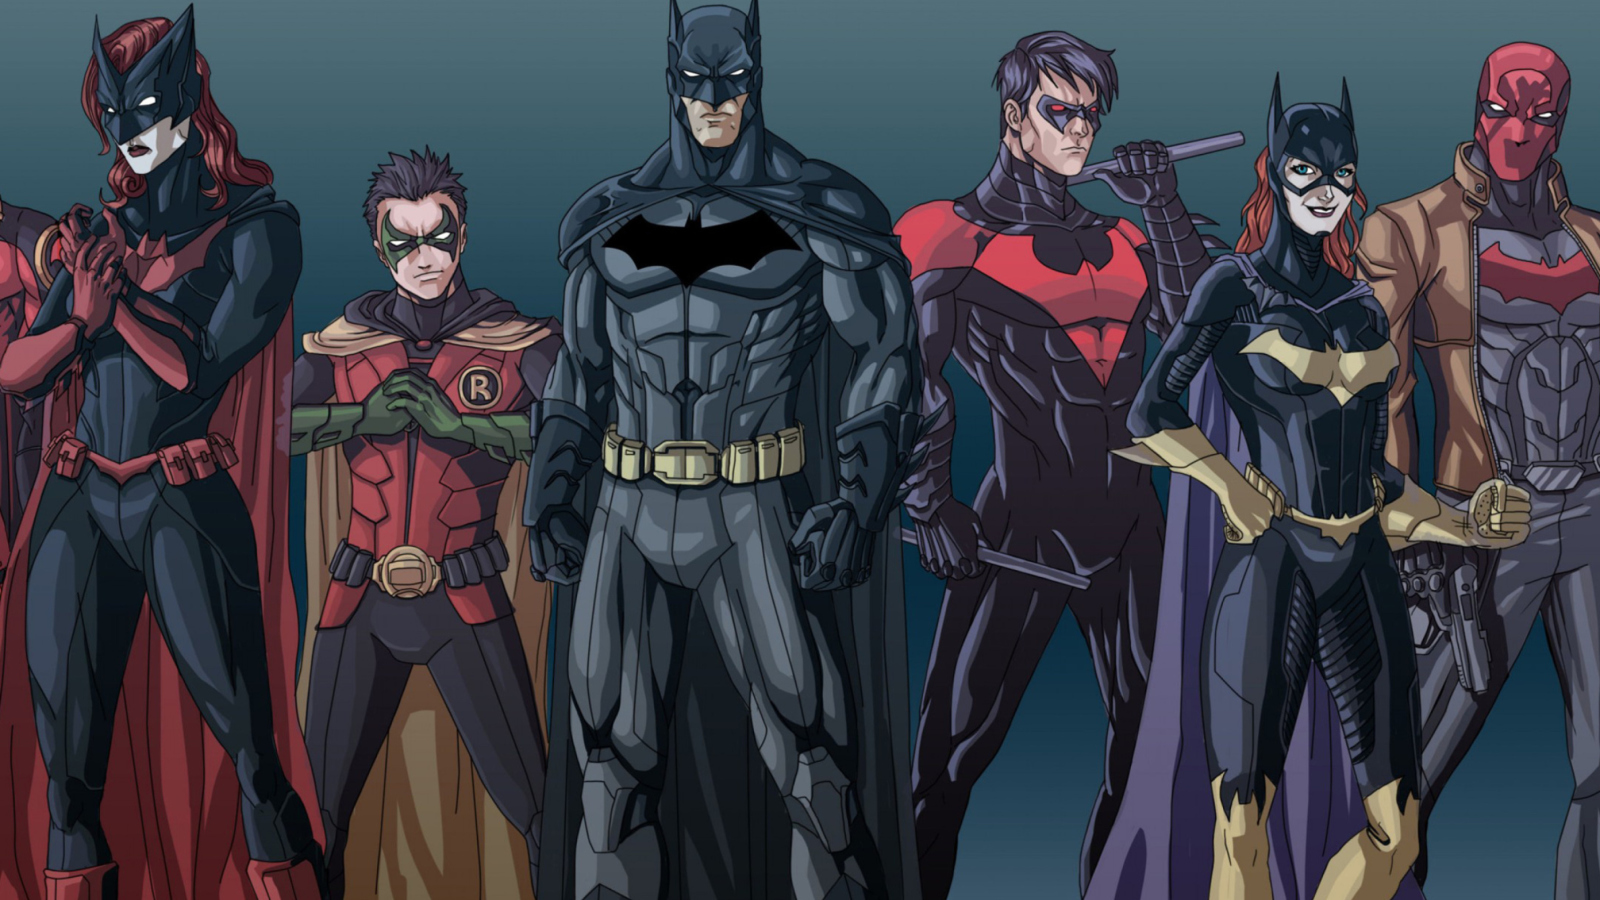 супергерой бэтмен superhero Batman без смс